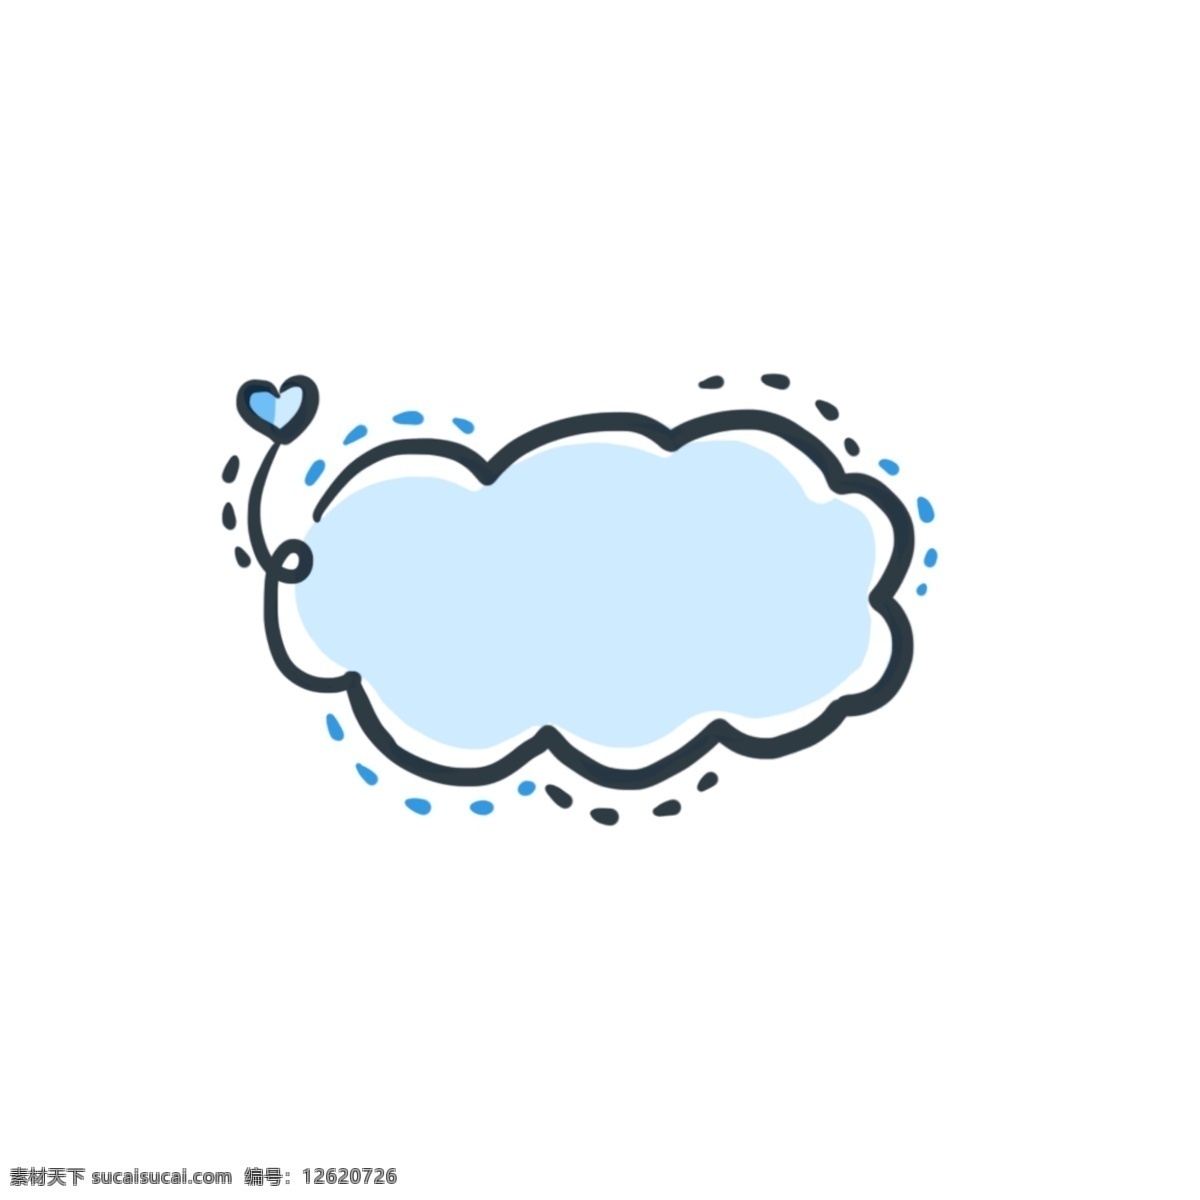 蓝色 云朵 边框 装饰 蓝色云朵 黑色边框 虚线 对话框 聊天框 装饰框 蓝色桃心 花朵边框